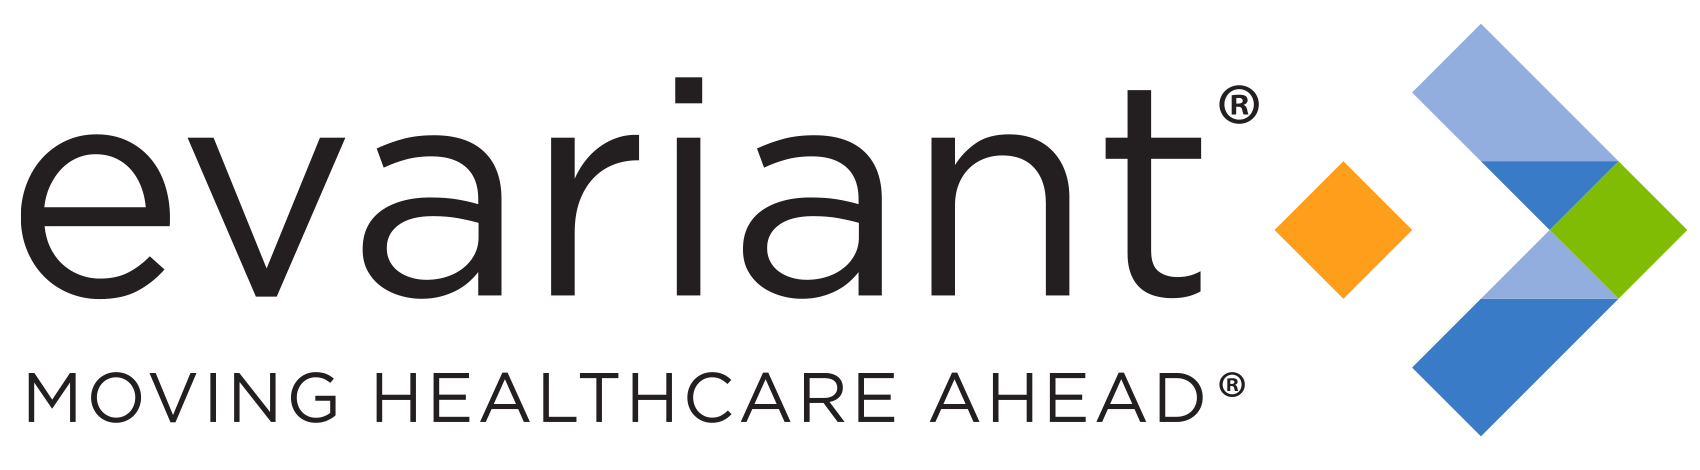 Evariant, Inc logo